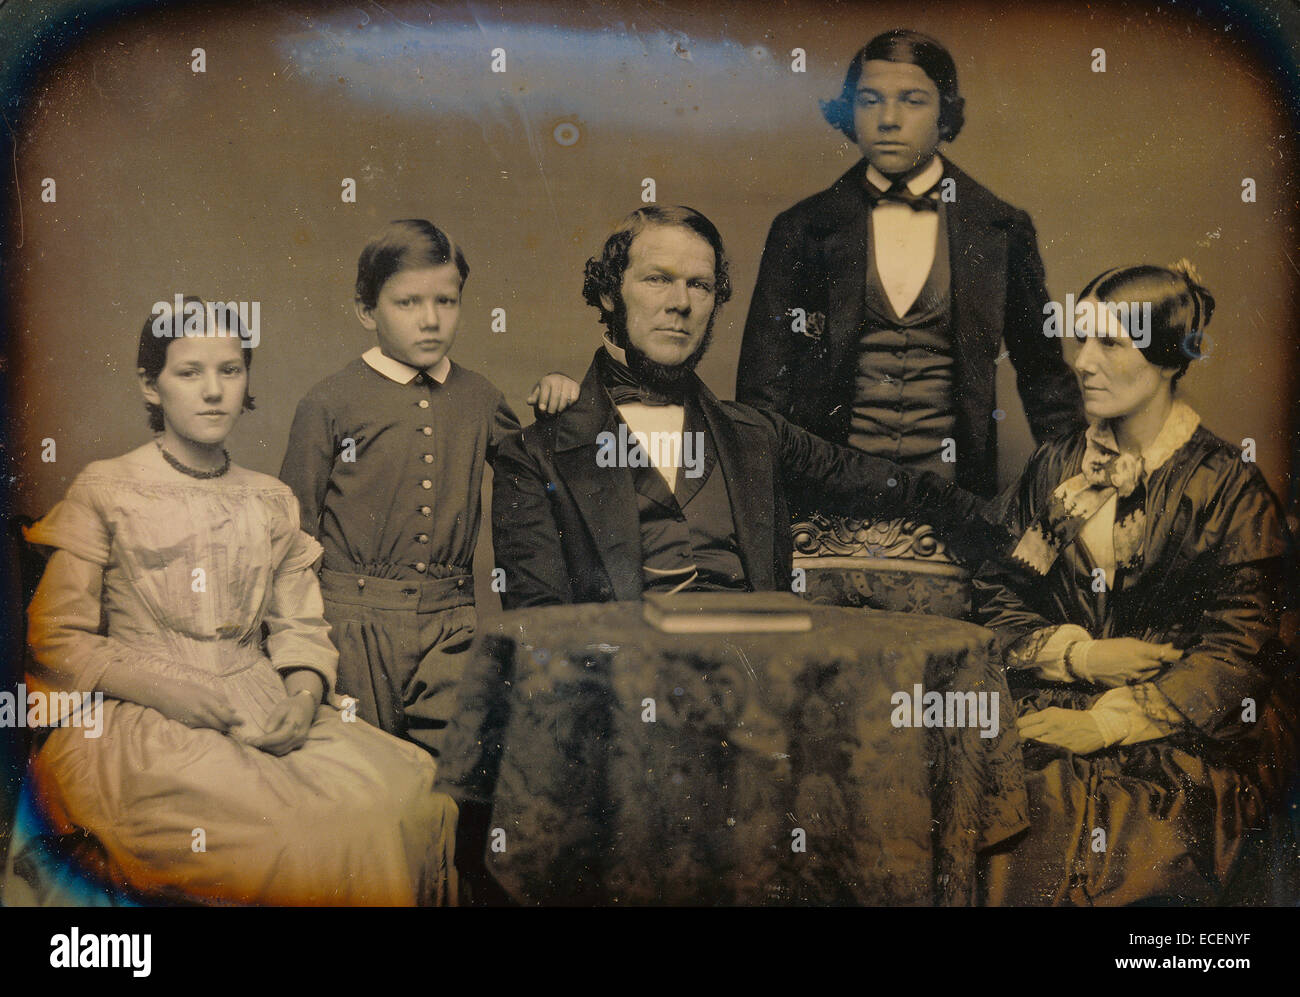 Ritratto di famiglia; Unknown maker, American; 1850 - 1855; Daguerreotype; tutta la piastra, Immagine: 13 x 17,8 cm (5 1/8 x 7 in.) Foto Stock